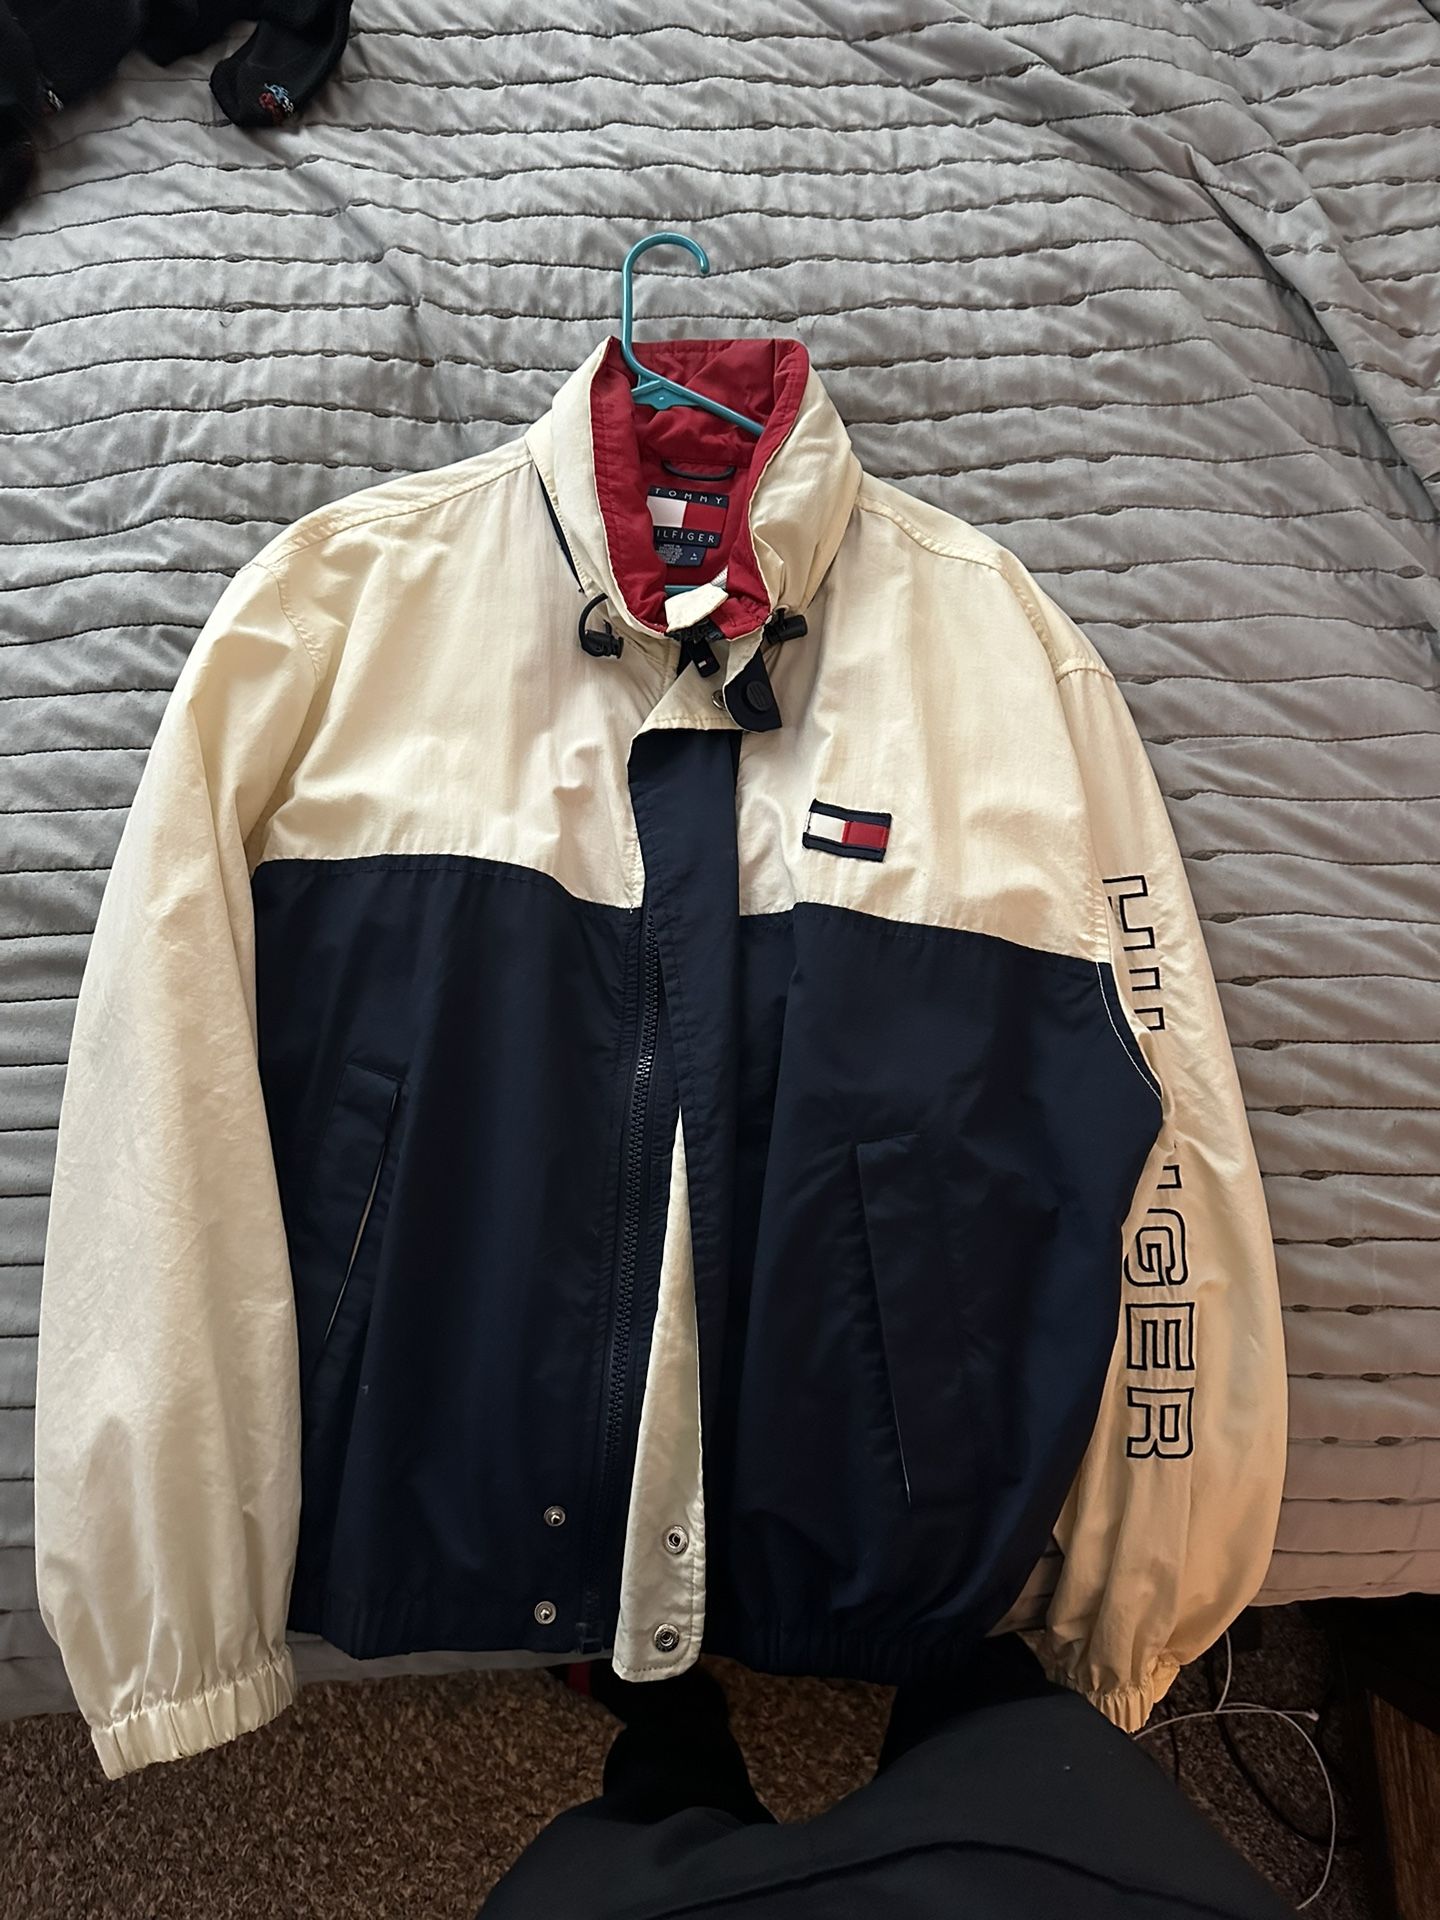 Vintage Tommy Hilfiger Jacket